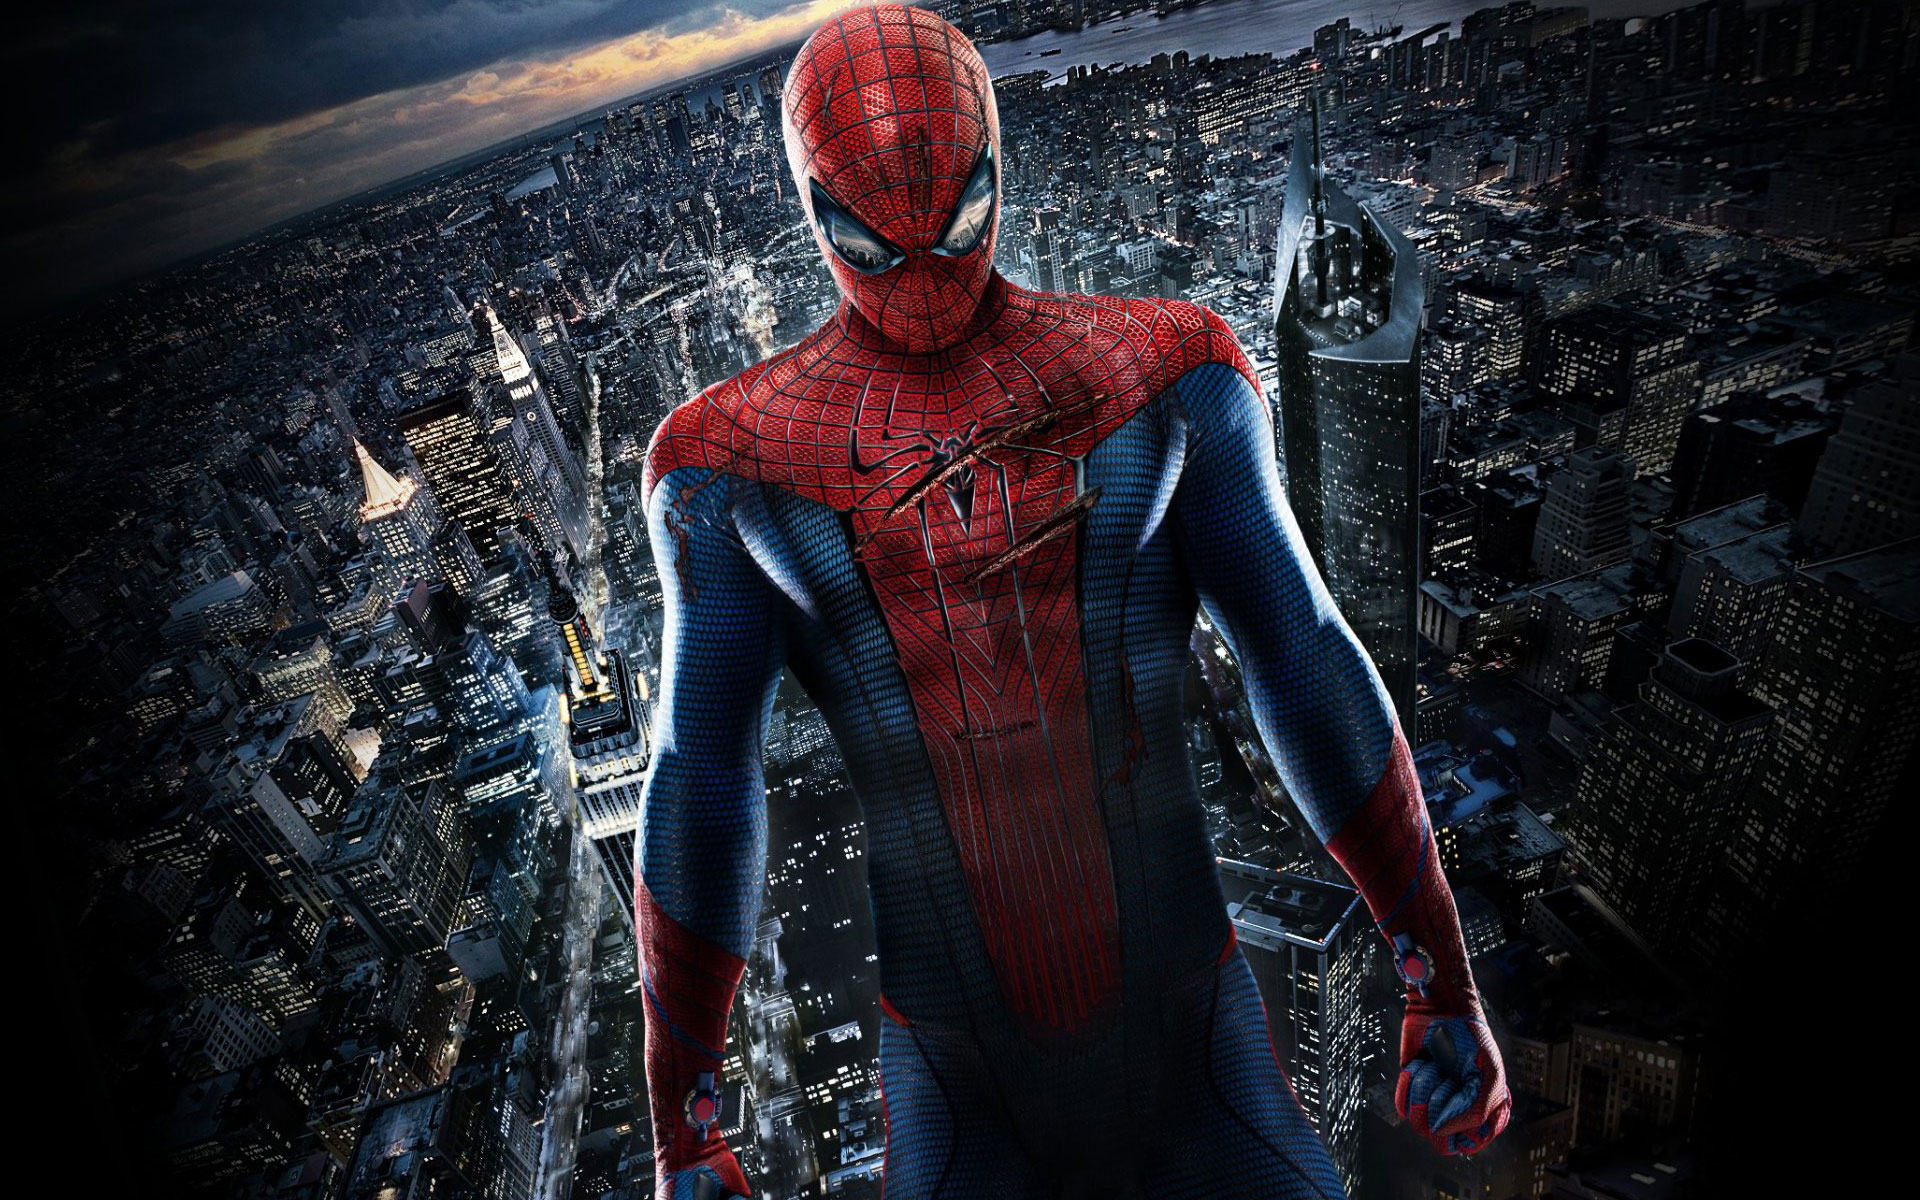 Spiderman-4-HD-Wallpapers3.jpg